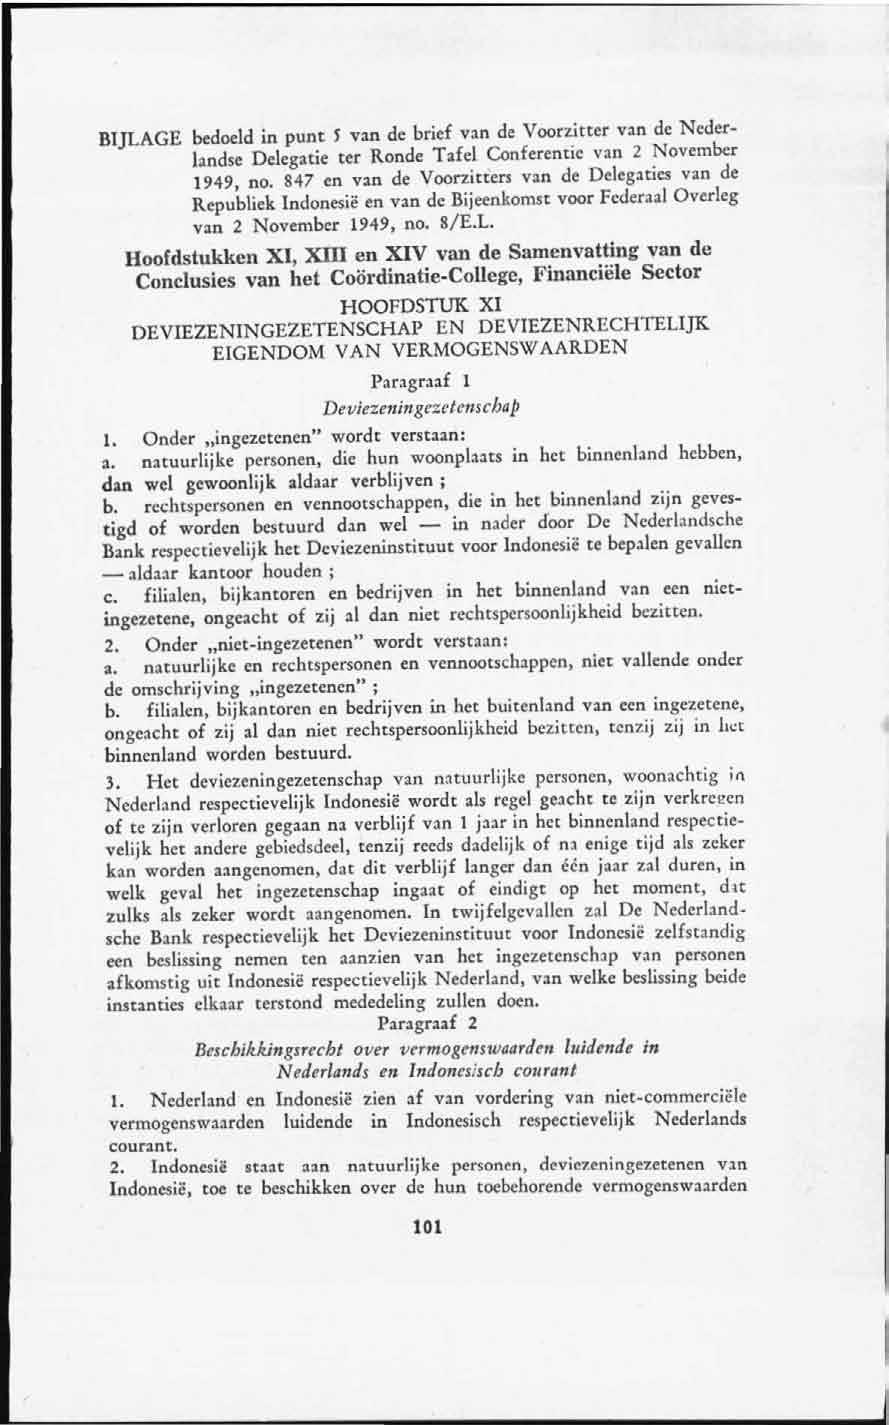 BIJLAGE bedoeld in punt 5 van de brief van de Voorzitter van de Nederlandse Delegatie ter Ronde Tafel Conferentie van 2 November 1949, no.